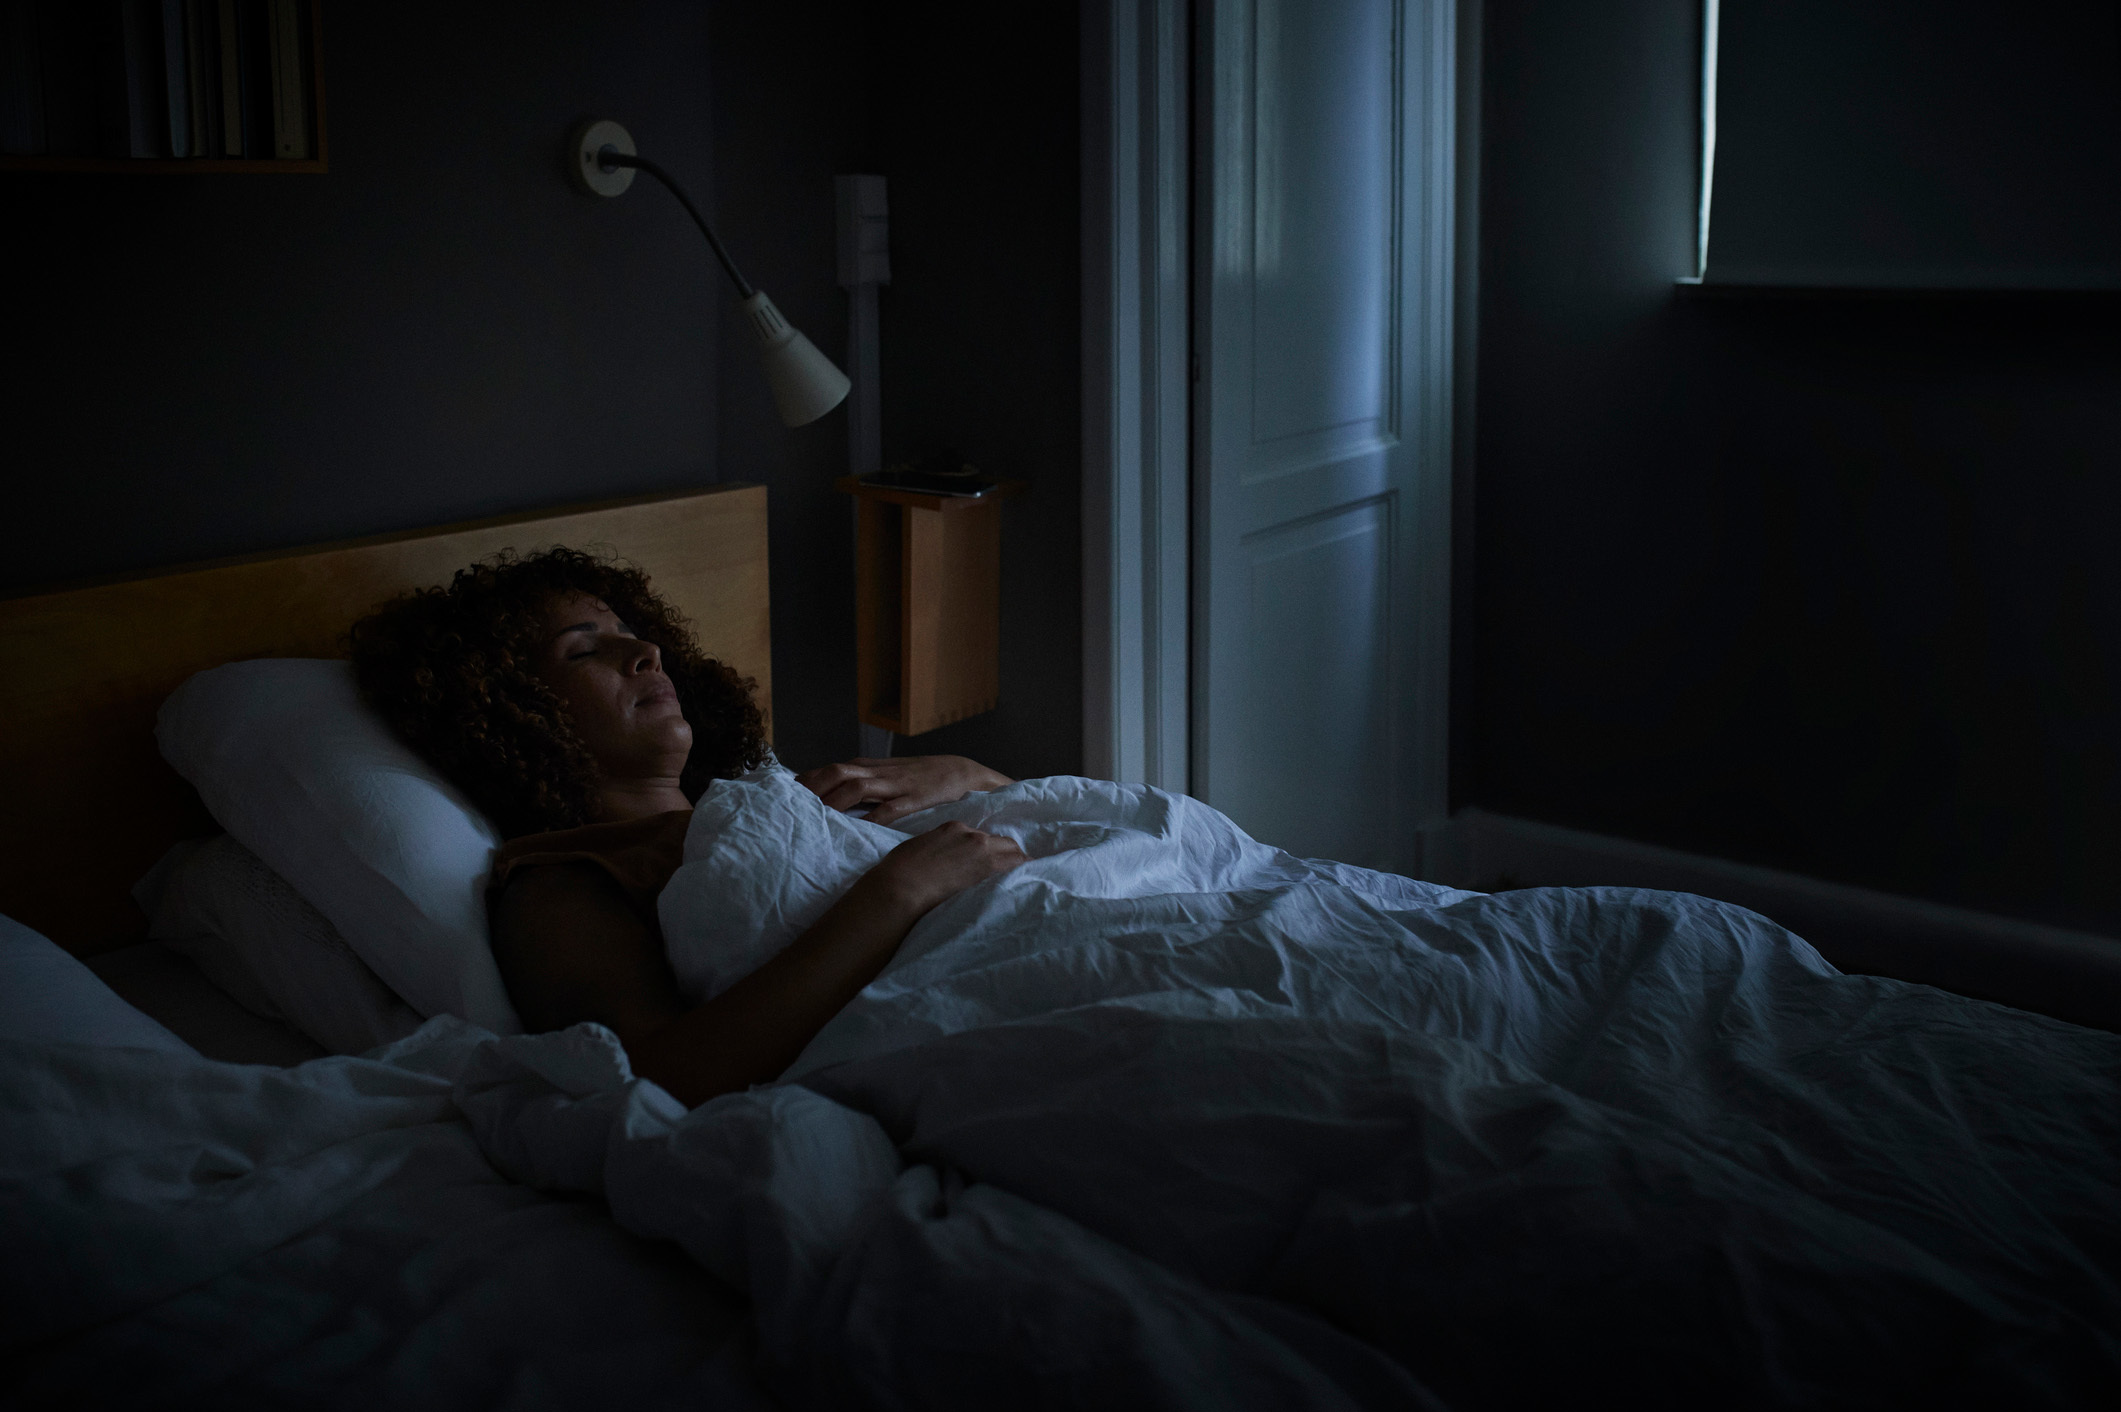 النوم حوالي 5 ساعات في الليلة قد يرفع خطر الإصابة بالجلطة والنوبة القلبية